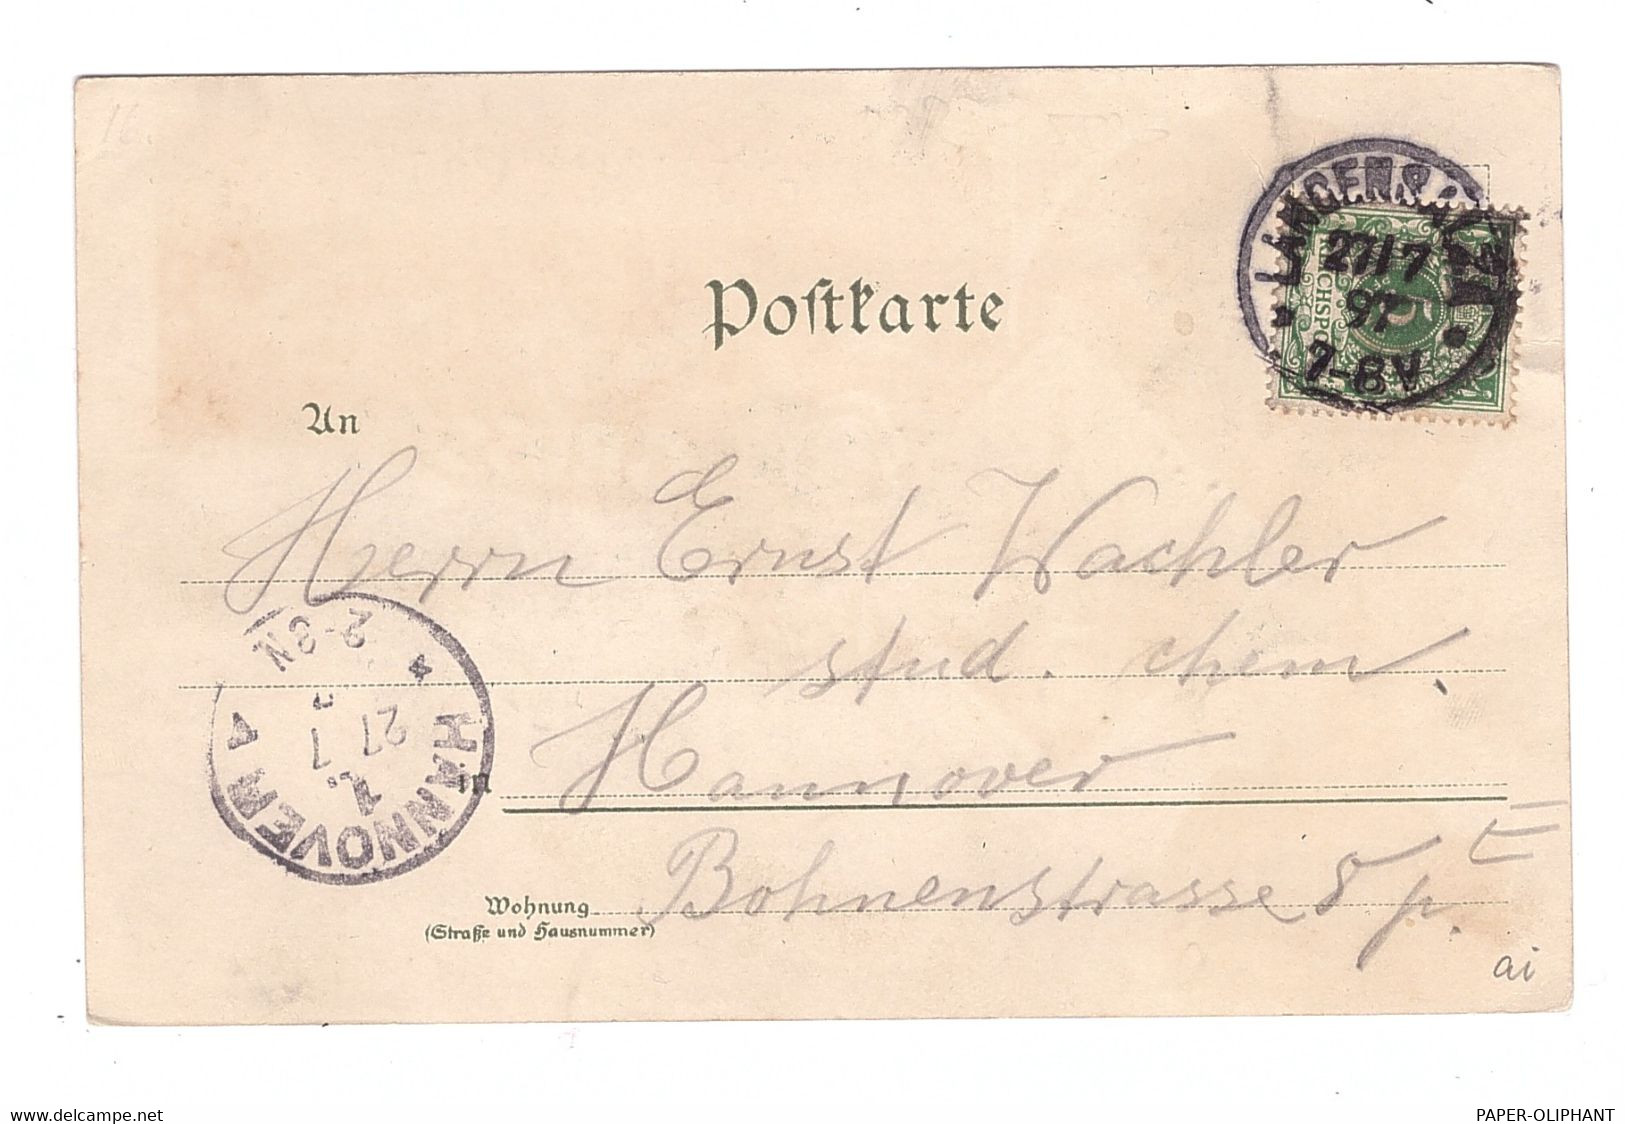 0-5820 BAD LANGENSALZA, Lithographie, Gruß Aus..., 1897 - Bad Langensalza